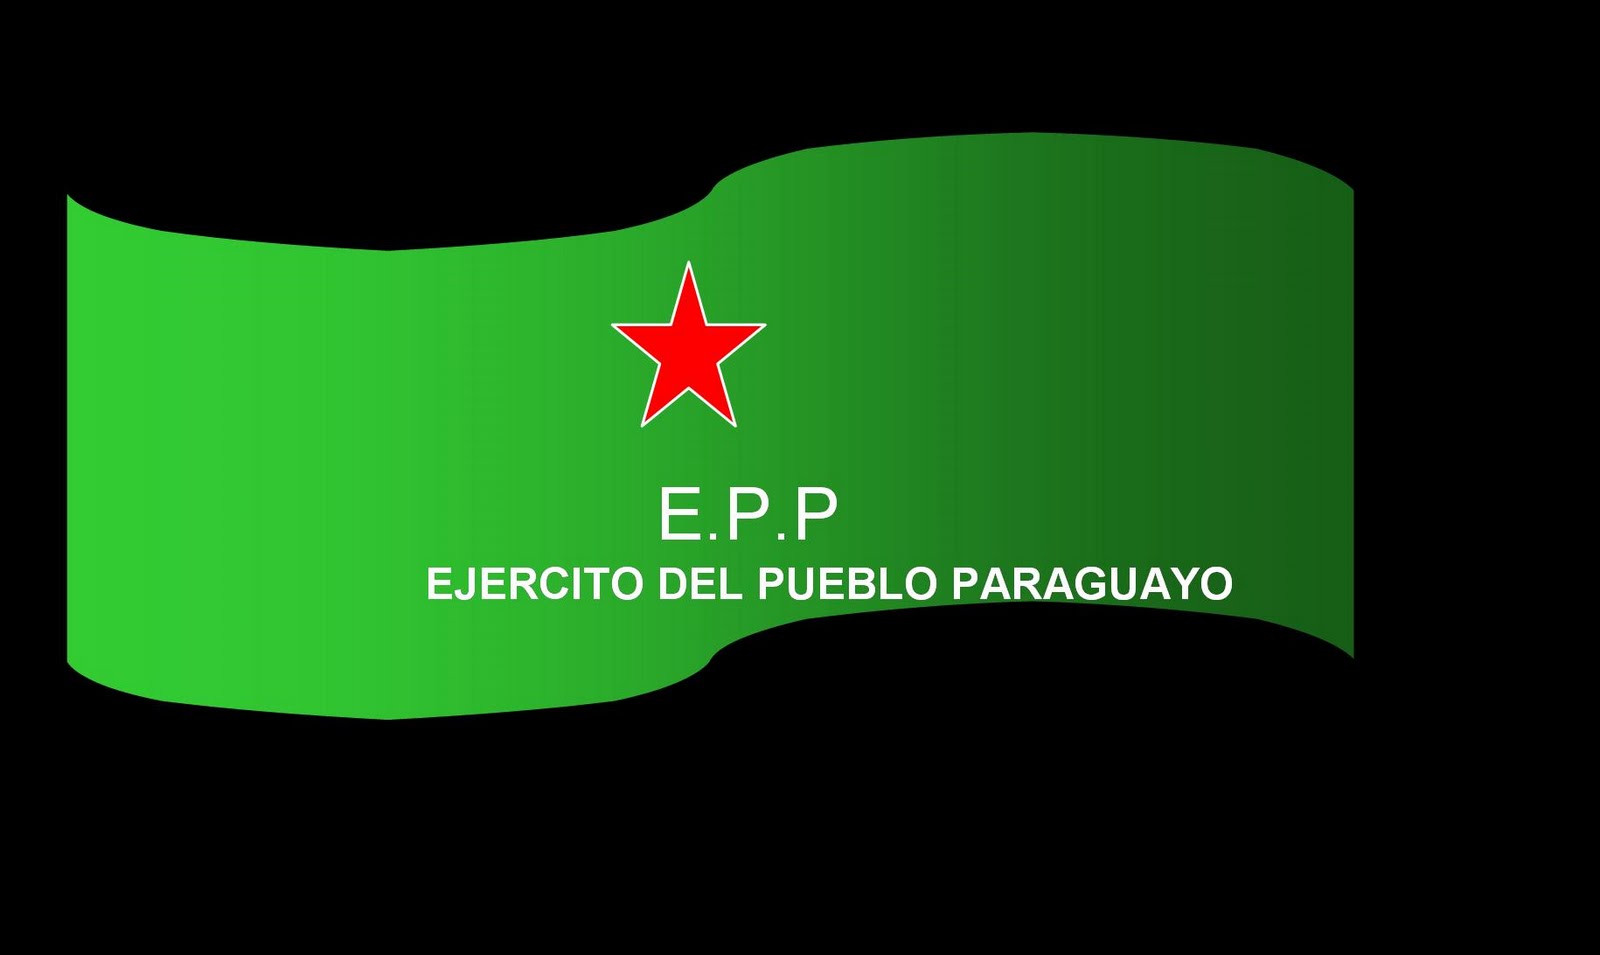 EJERCITO DEL PUEBLO PARAGUAYO